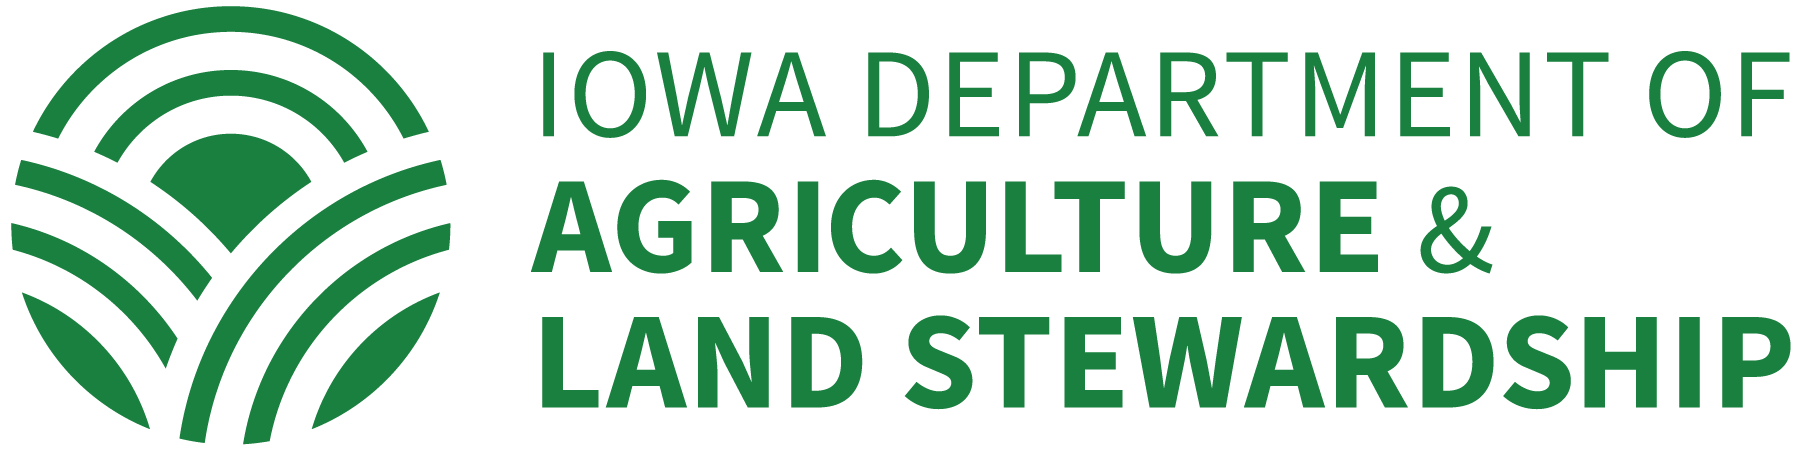 iowa pesticide license